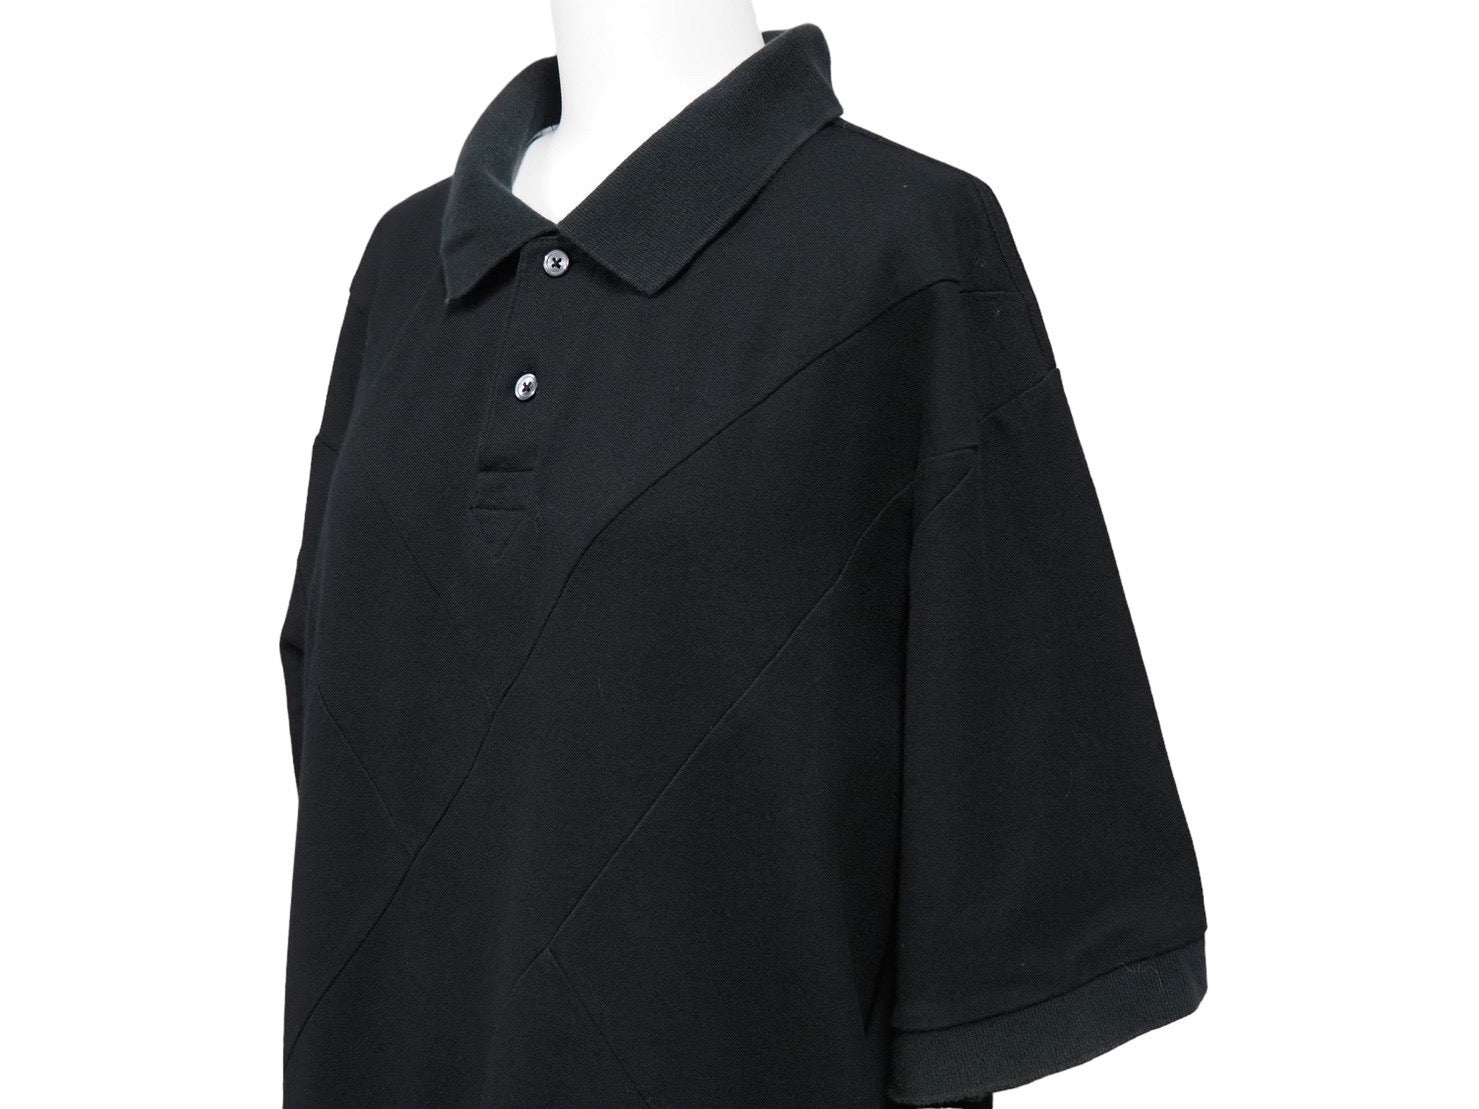 3肩幅OriginalFake オリジナルフェイク ポロシャツ 12SPRING/SUMMER トップス コットン ナイロン ブラック ホワイト 3 良品  56634